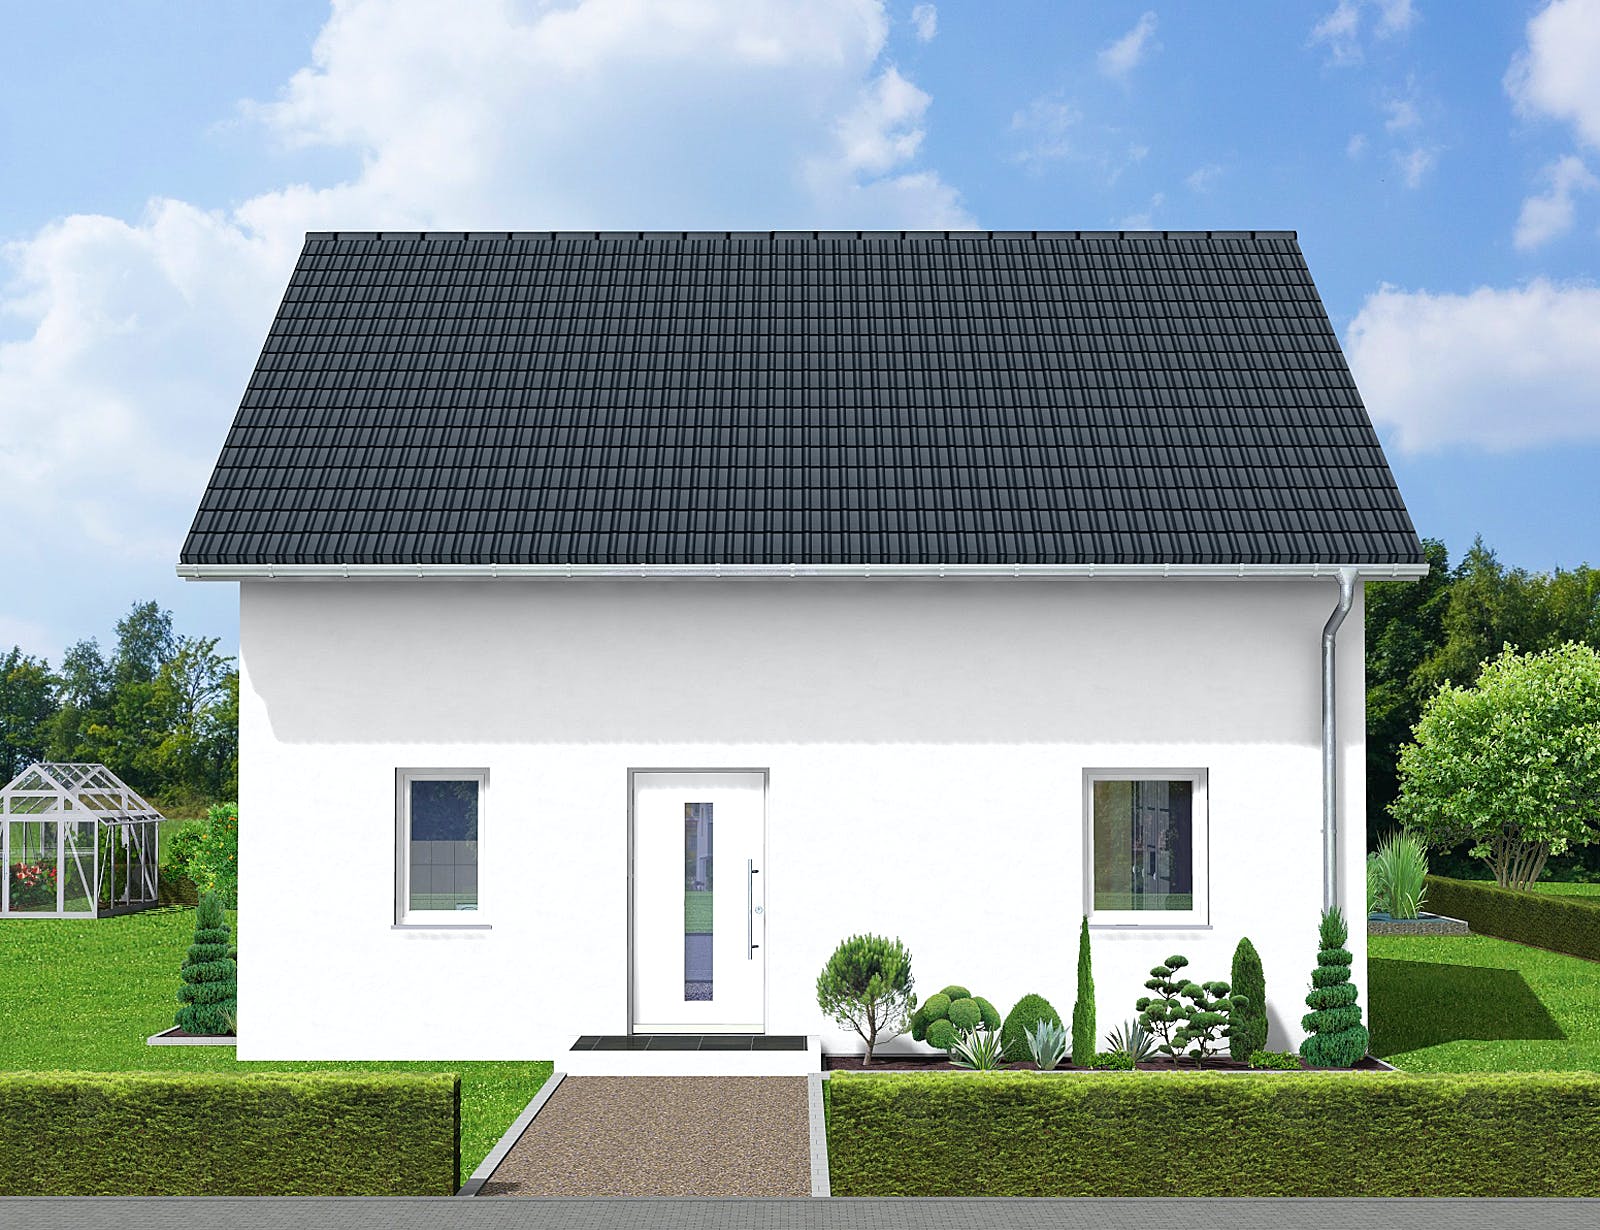 Massivhaus Kern von AVOS Hausbau Schlüsselfertig ab 279950€, Satteldach-Klassiker Außenansicht 1